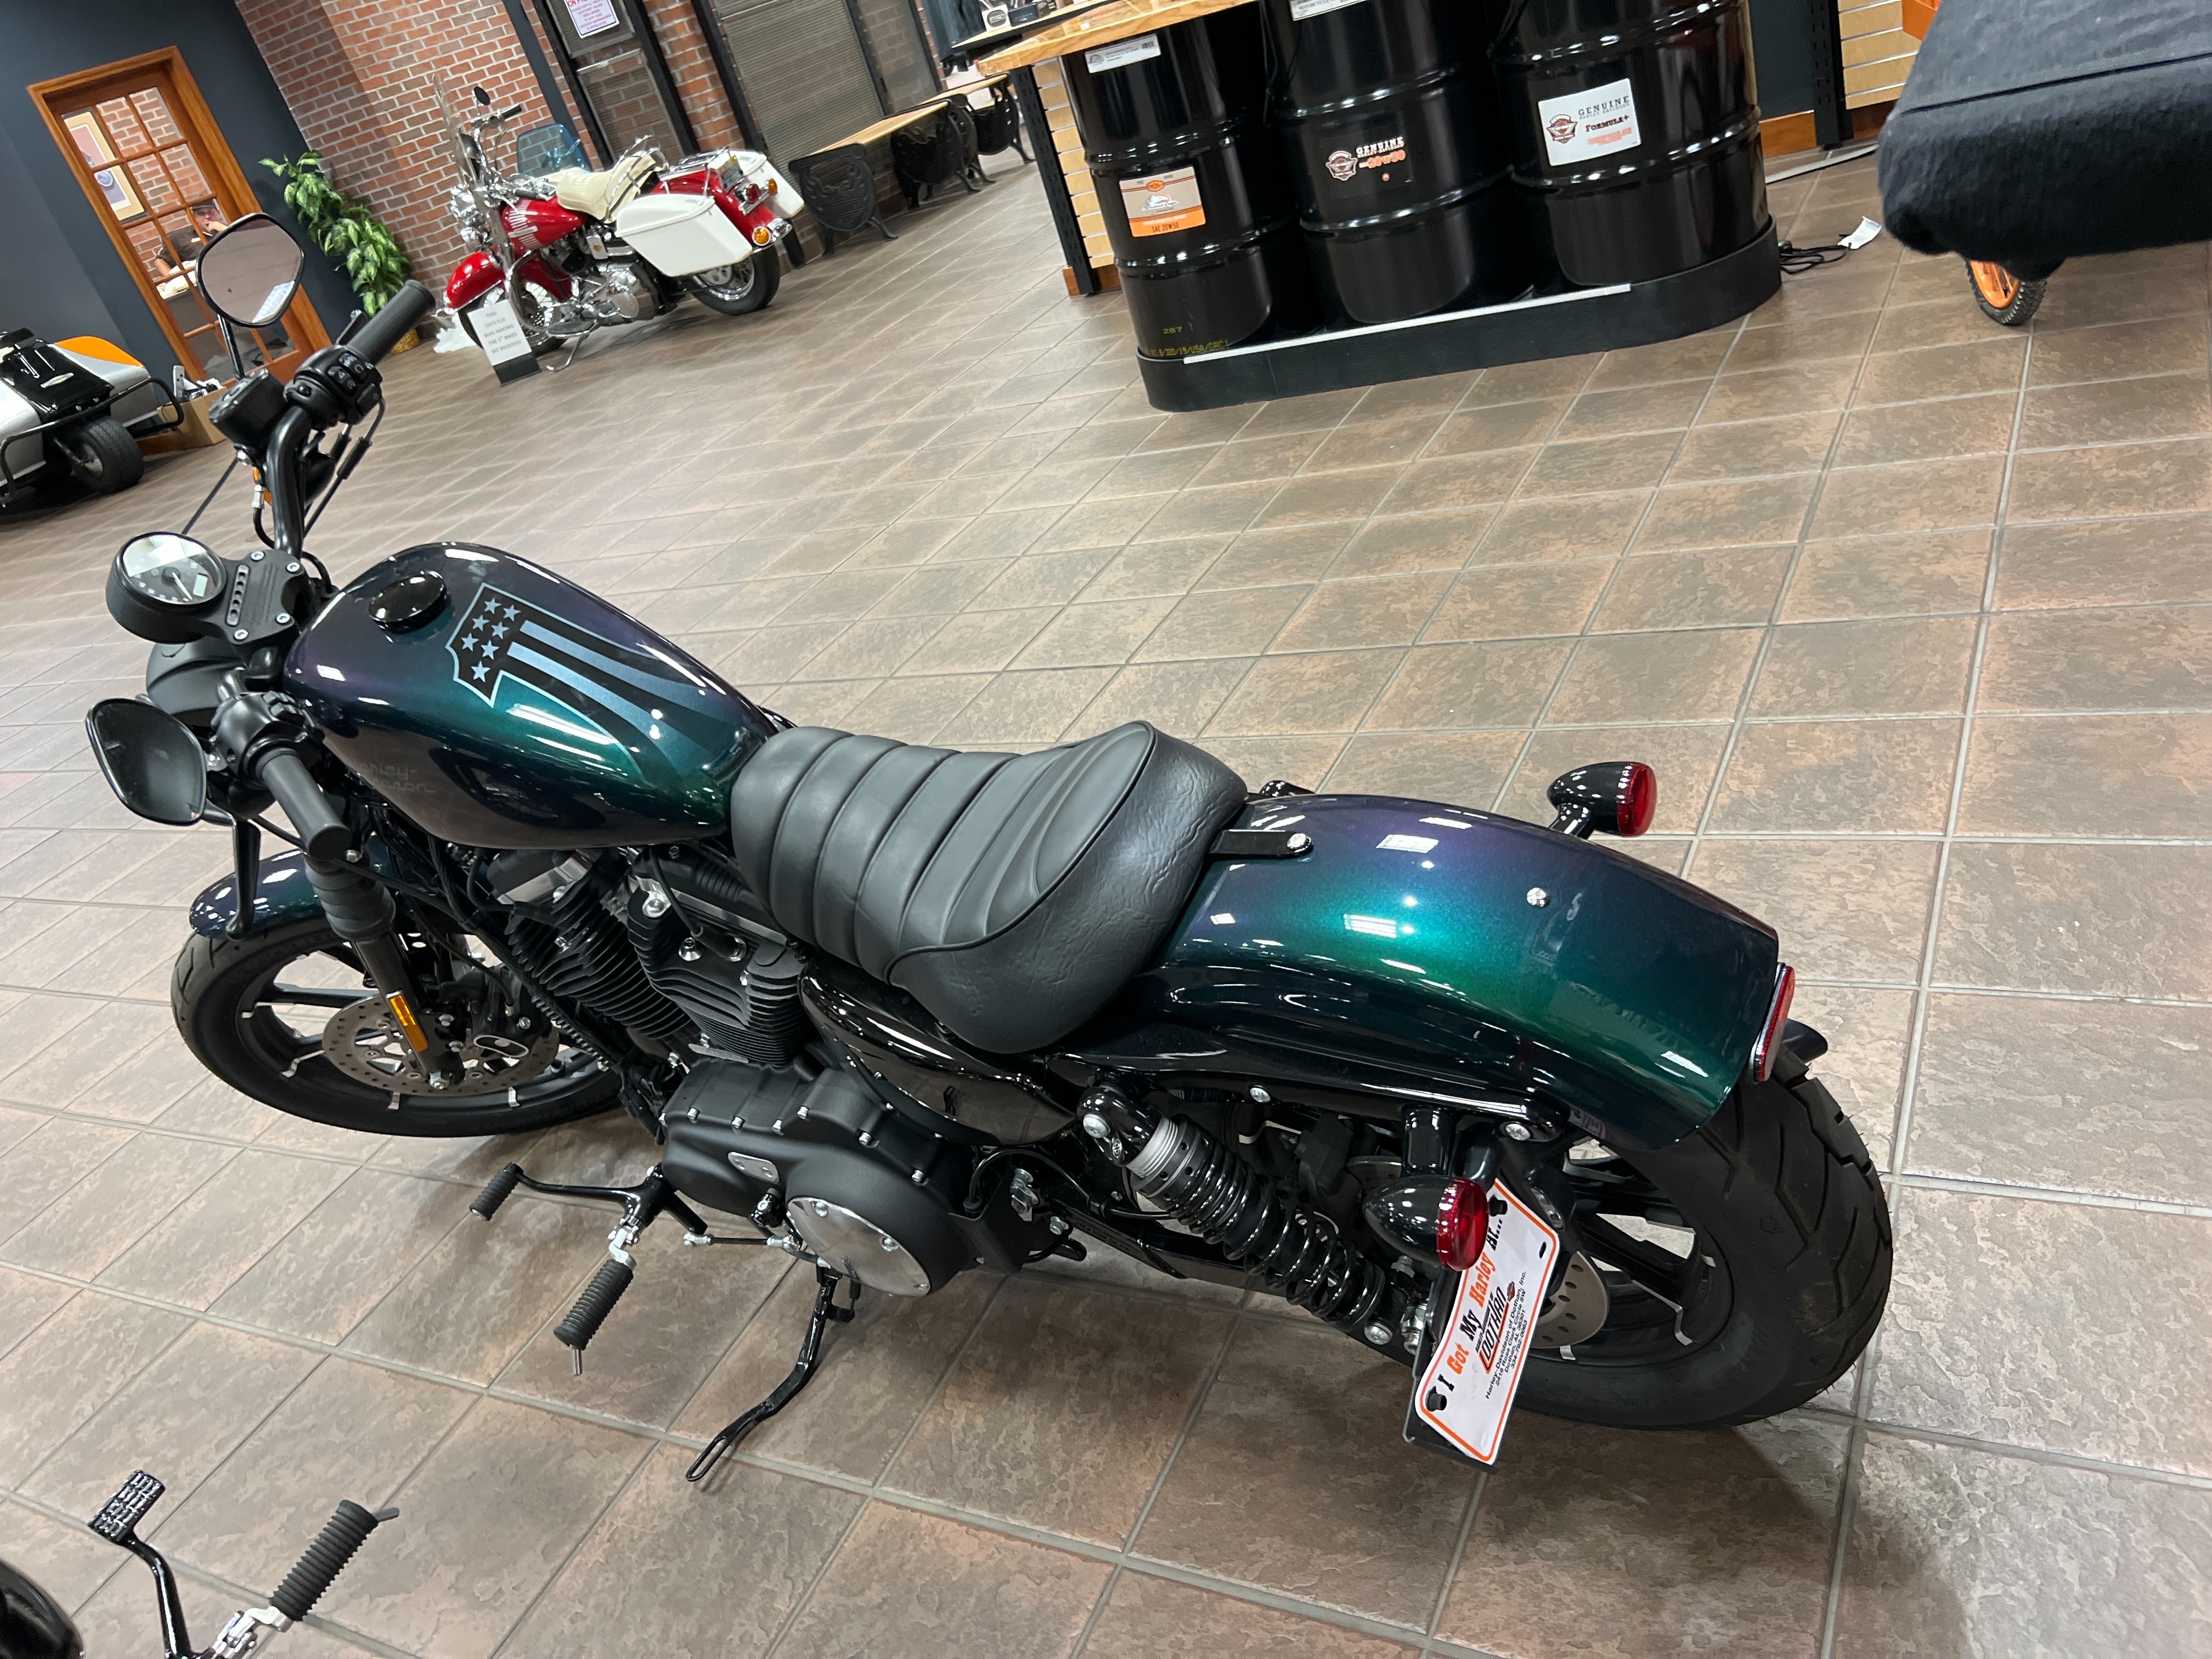 2021 Harley-Davidson Cruiser XL 883N Iron 883 at Harley-Davidson of Dothan